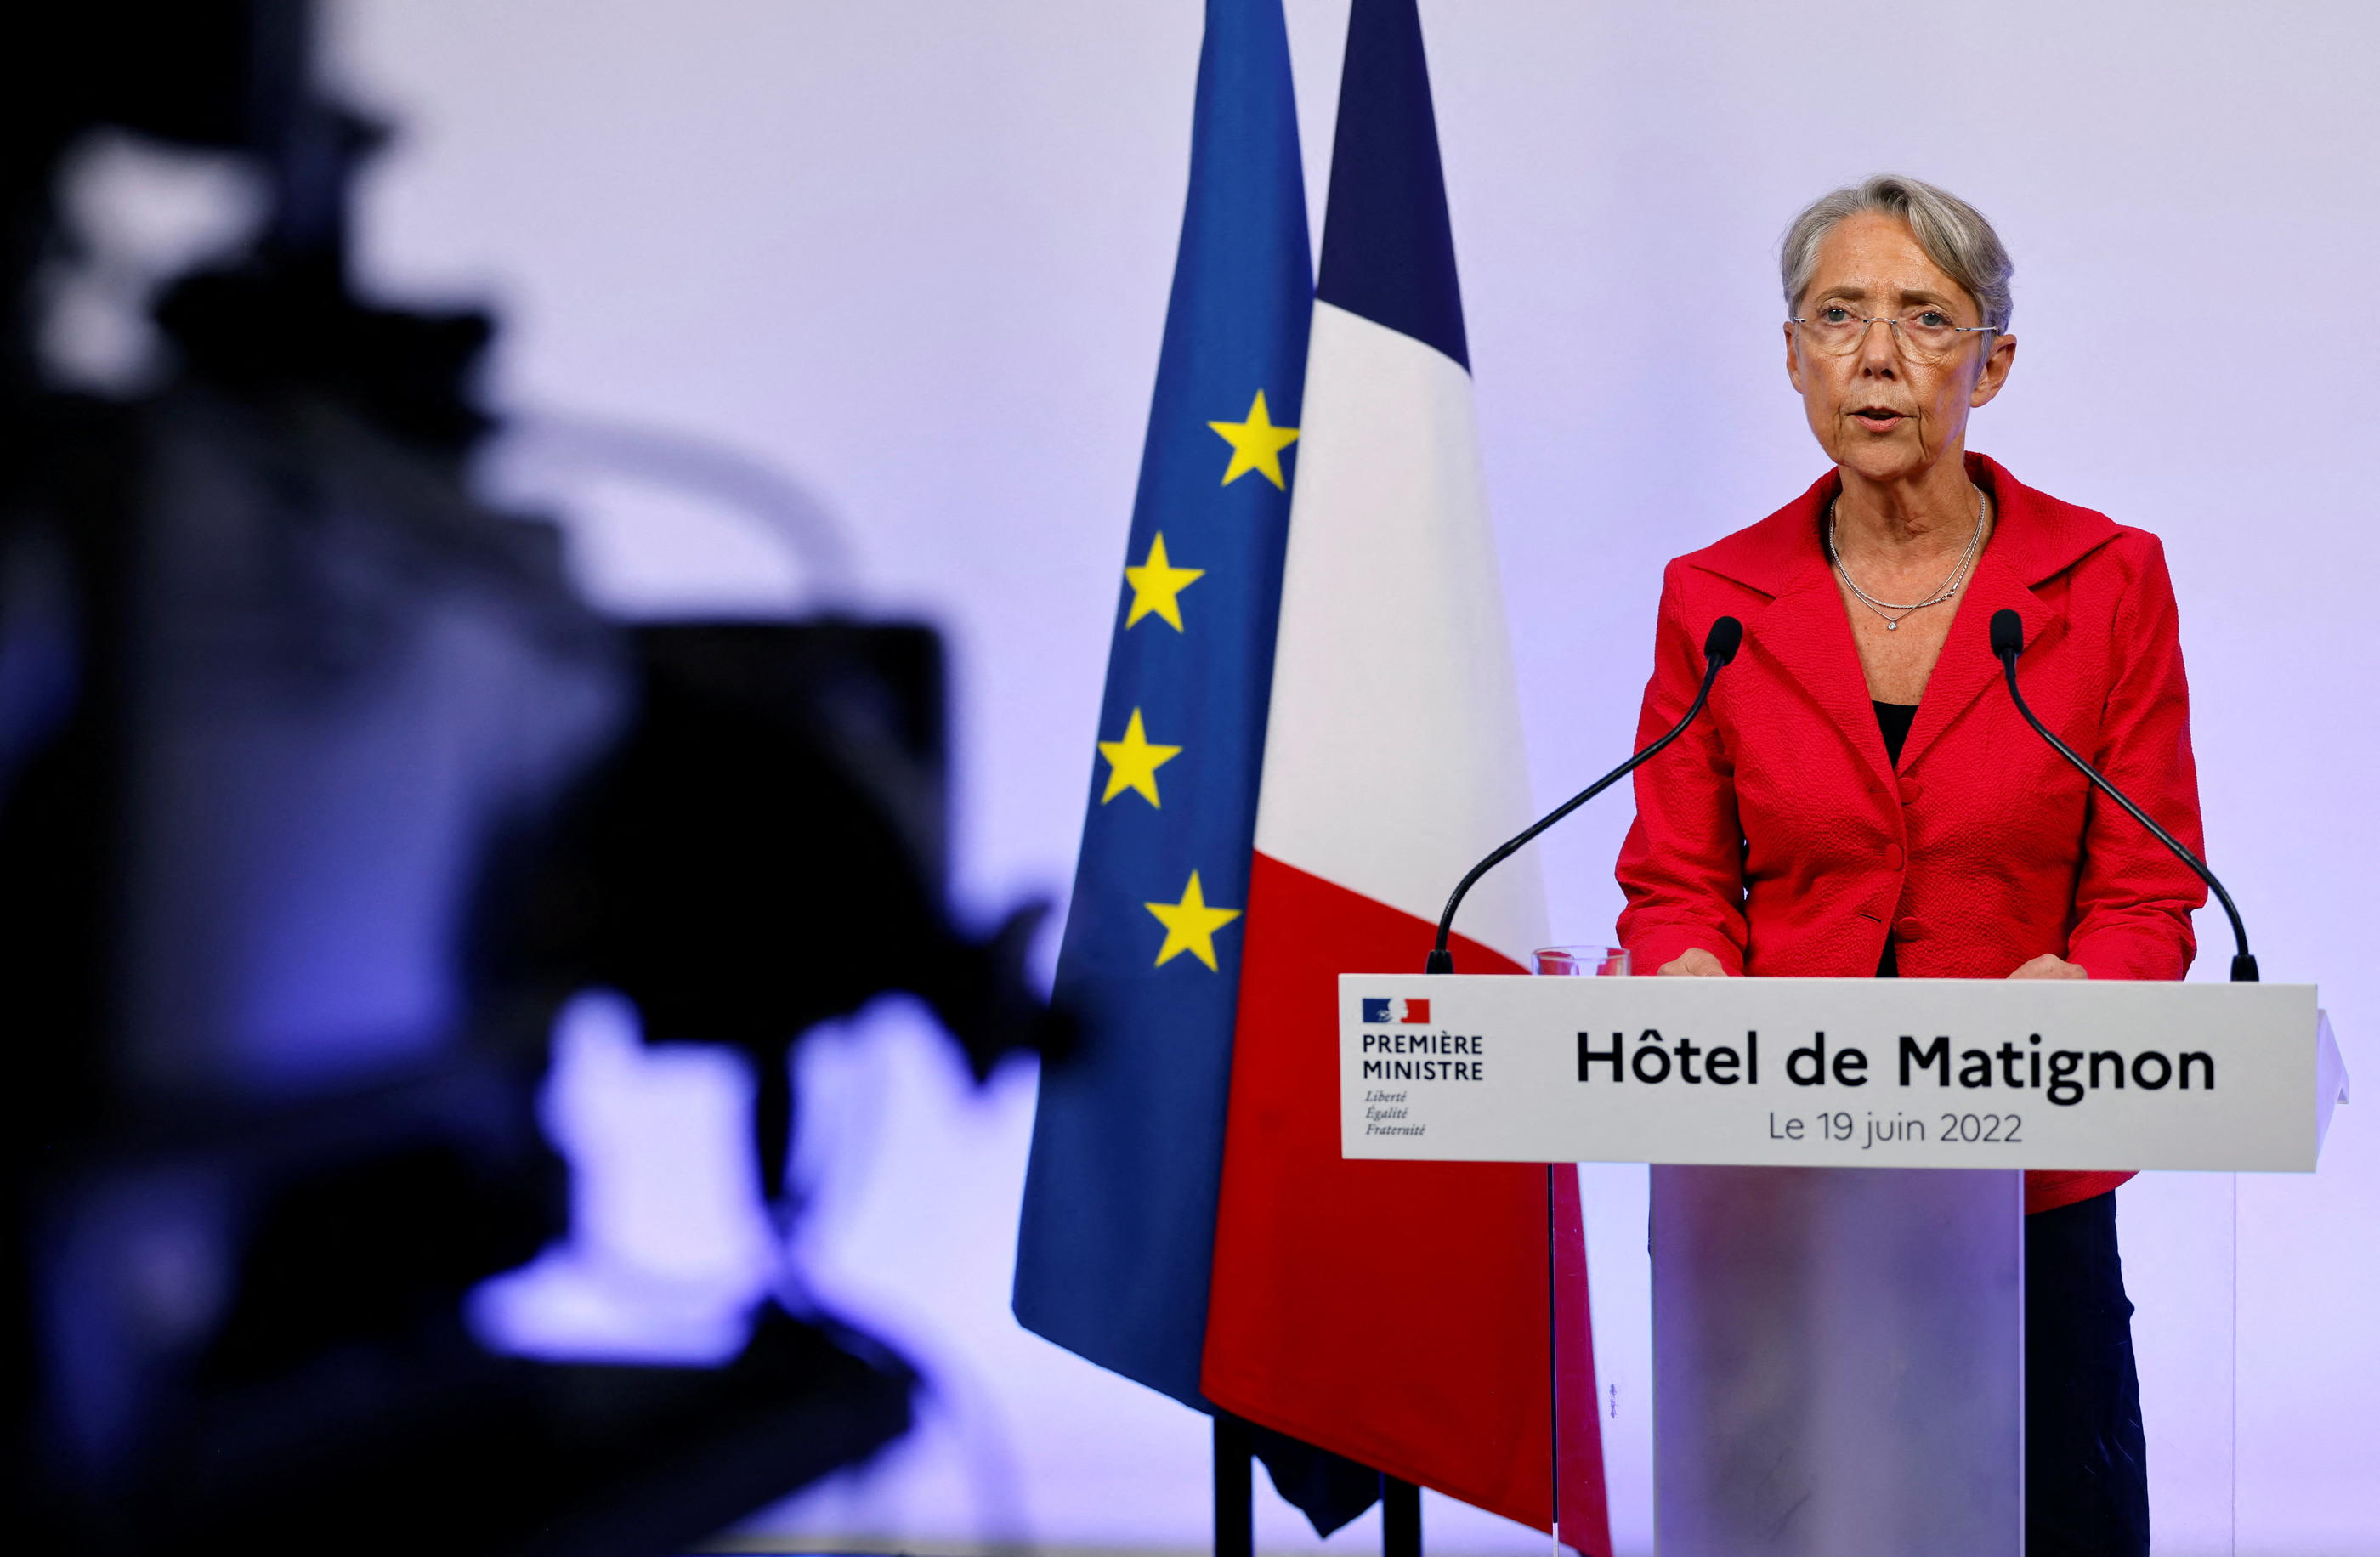 La première ministre Elisabeth Borne, ici à Matignon le 19 juin, a été élue députée Renaissance. Reuters/Ludovic Marin